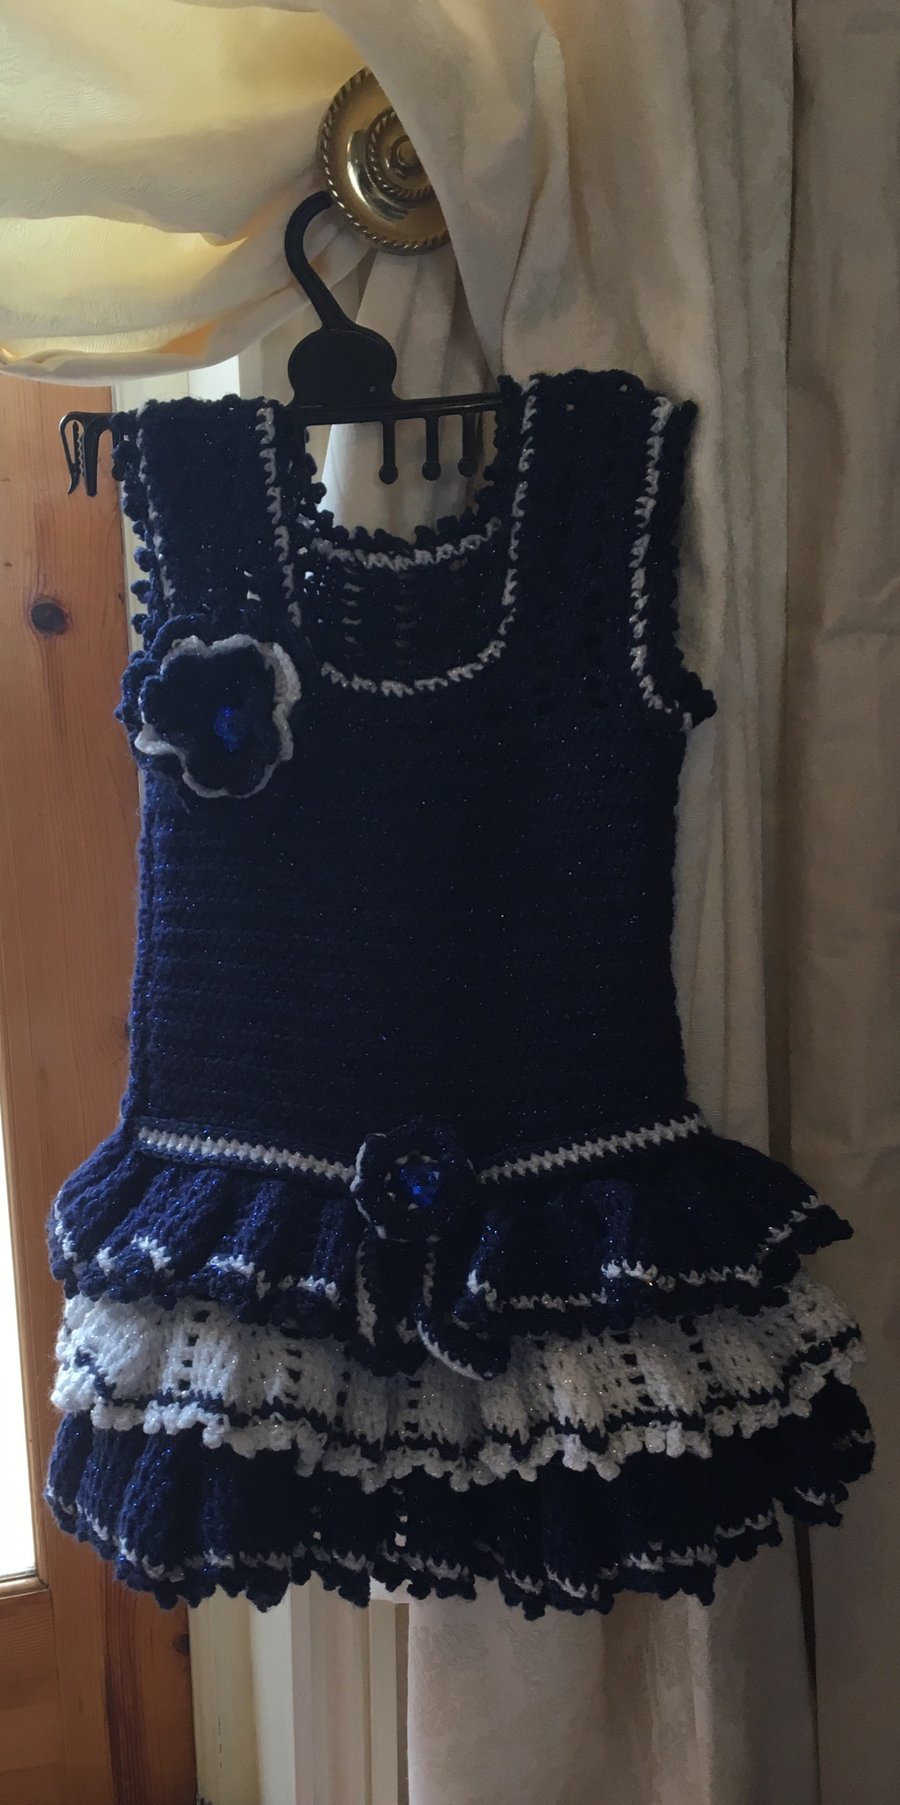 Sweet crocheted dress